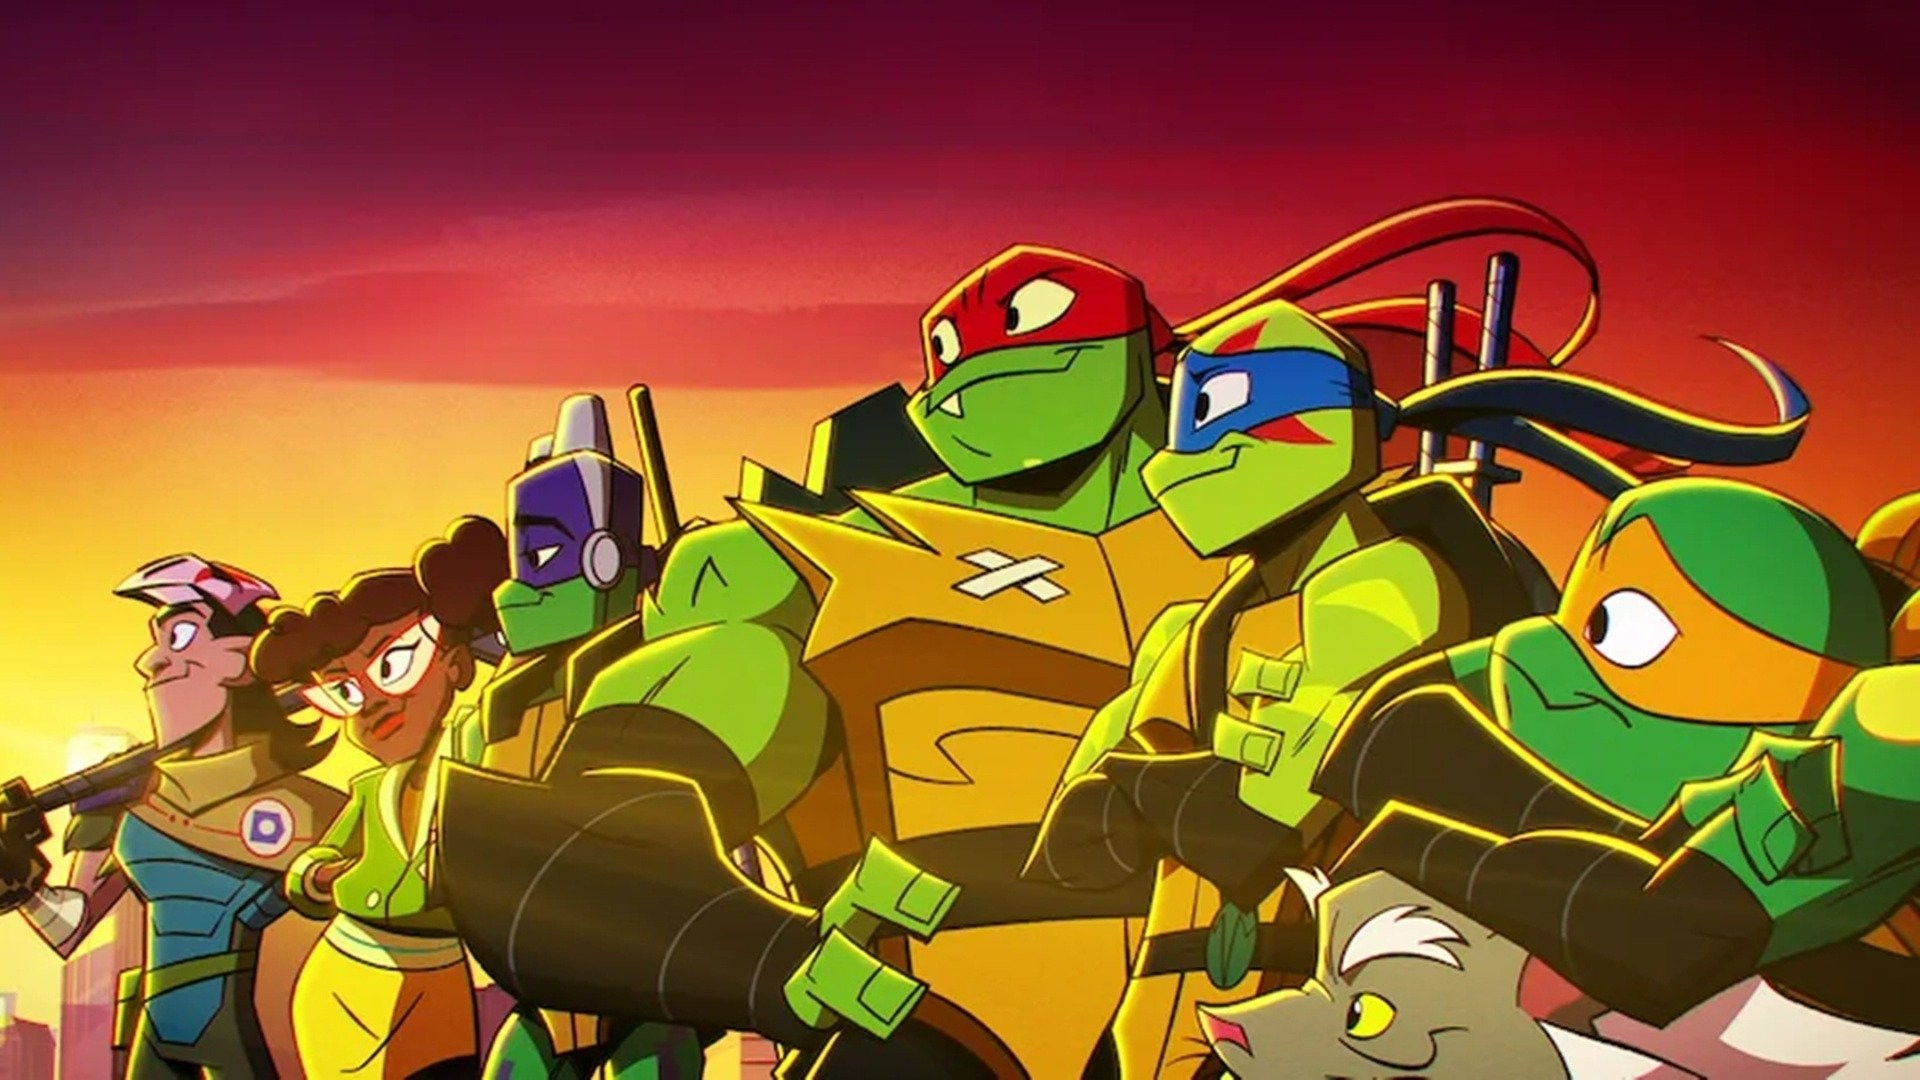 Rise of the Teenage Mutant Ninja Turtles: The Movie' Cast Guide - Netflix  Tudum